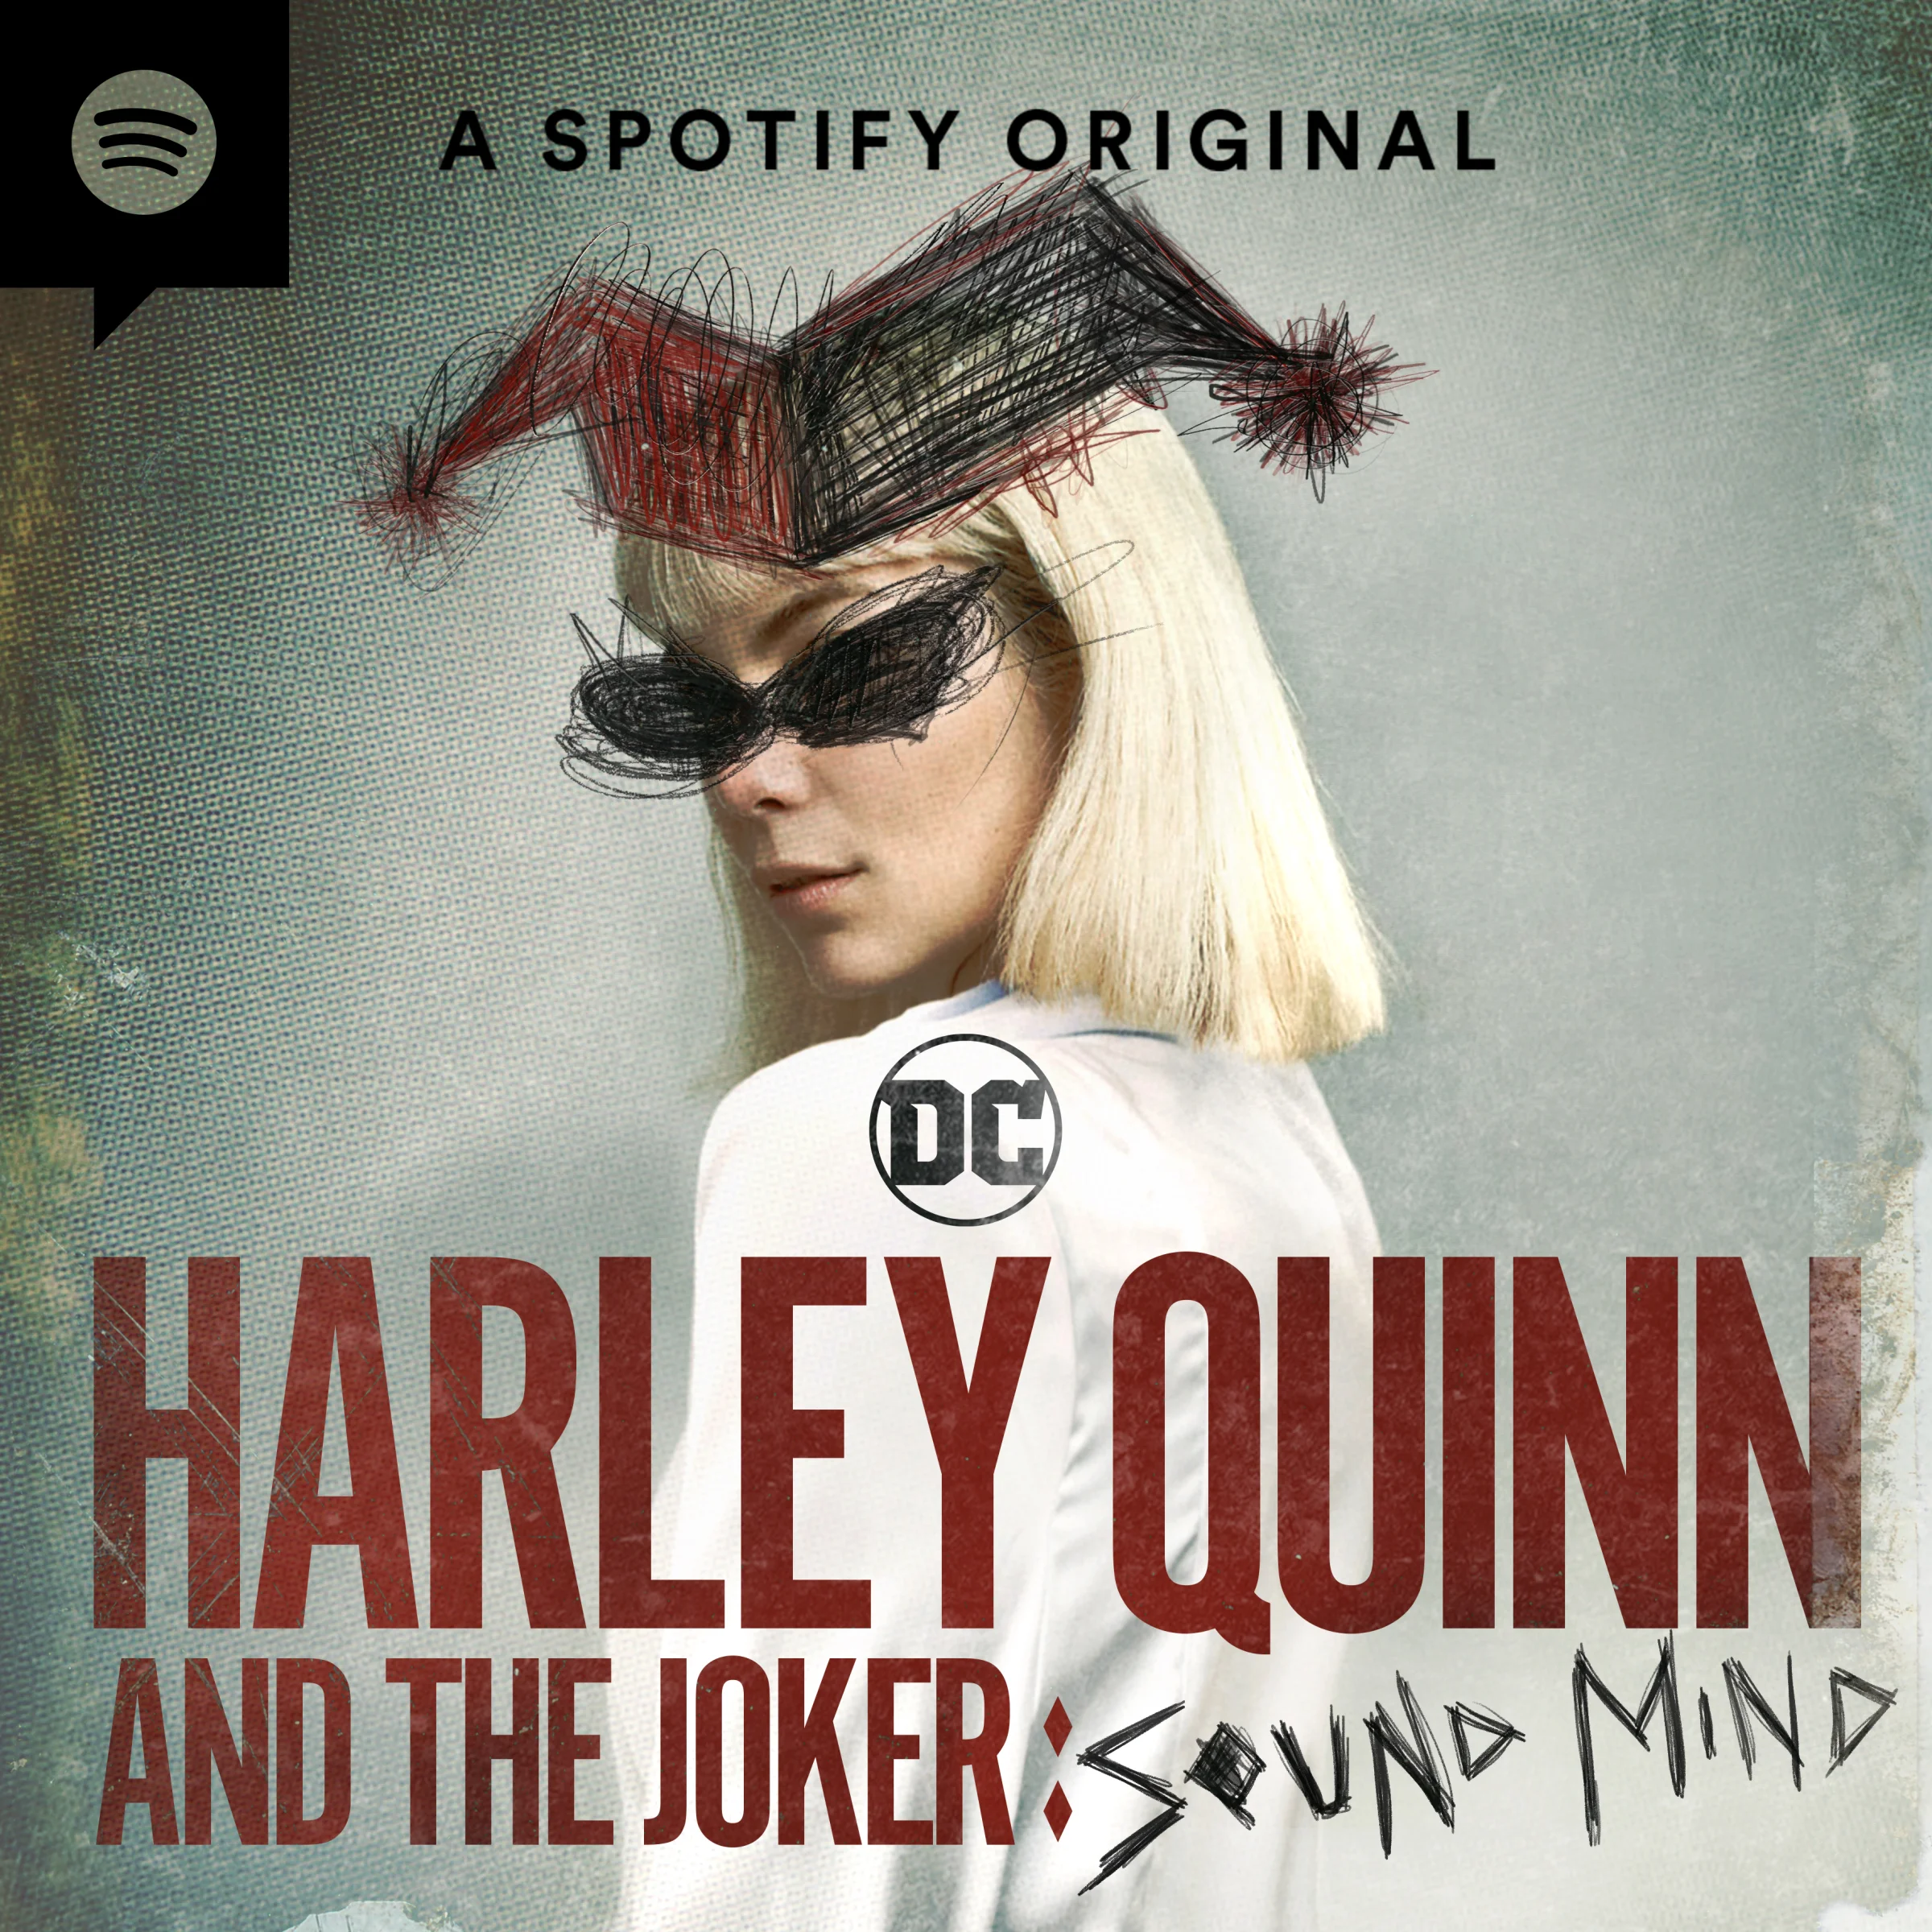 DC и Spotify выпустят аудиосериал о знакомстве Харли Квинн и Джокера в январе - фото 1